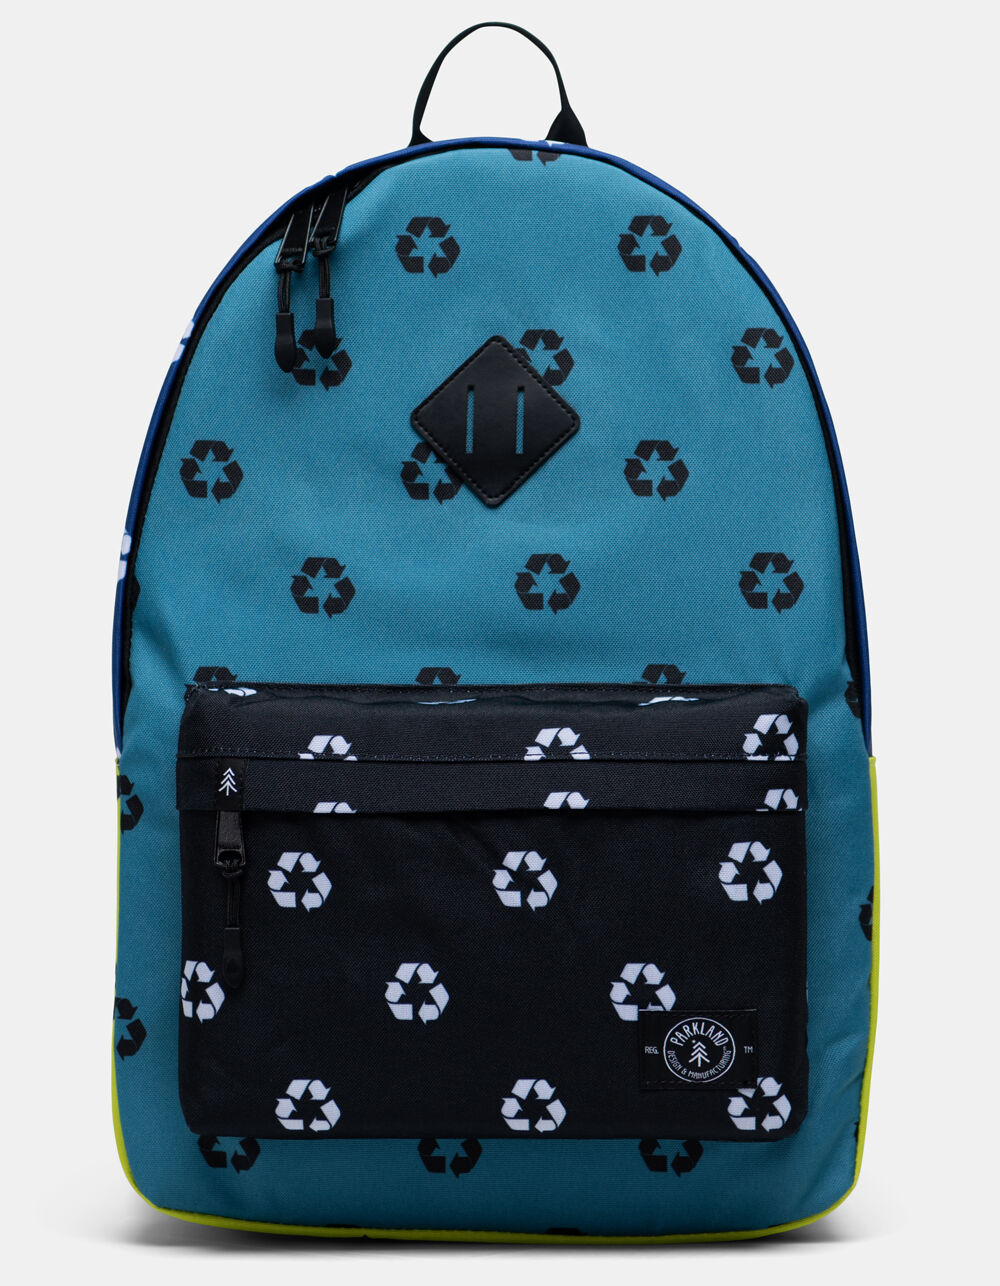 kingston backpack